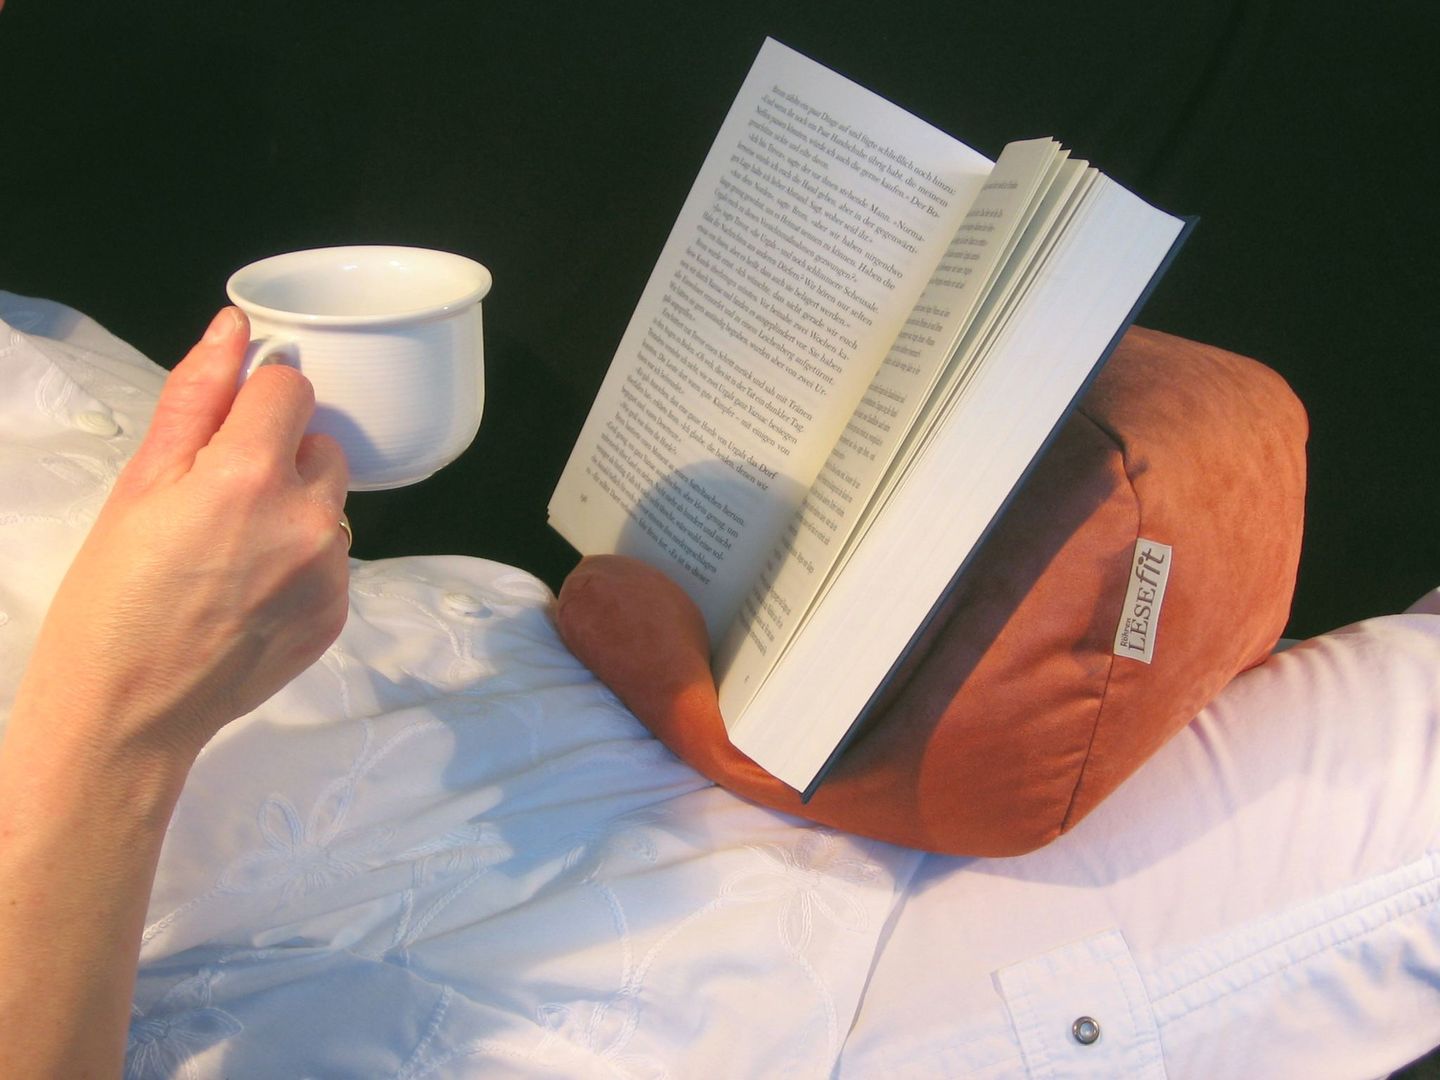 Tablet-Kissen Lesekissen - LESEfit soft, der echte Sitzsack für Buch & e-Book-Reader, antirutsch elastan-frei für Bett & Couch / terracotta, RÖHREN WOHNideen RÖHREN WOHNideen Country style bedroom Accessories & decoration